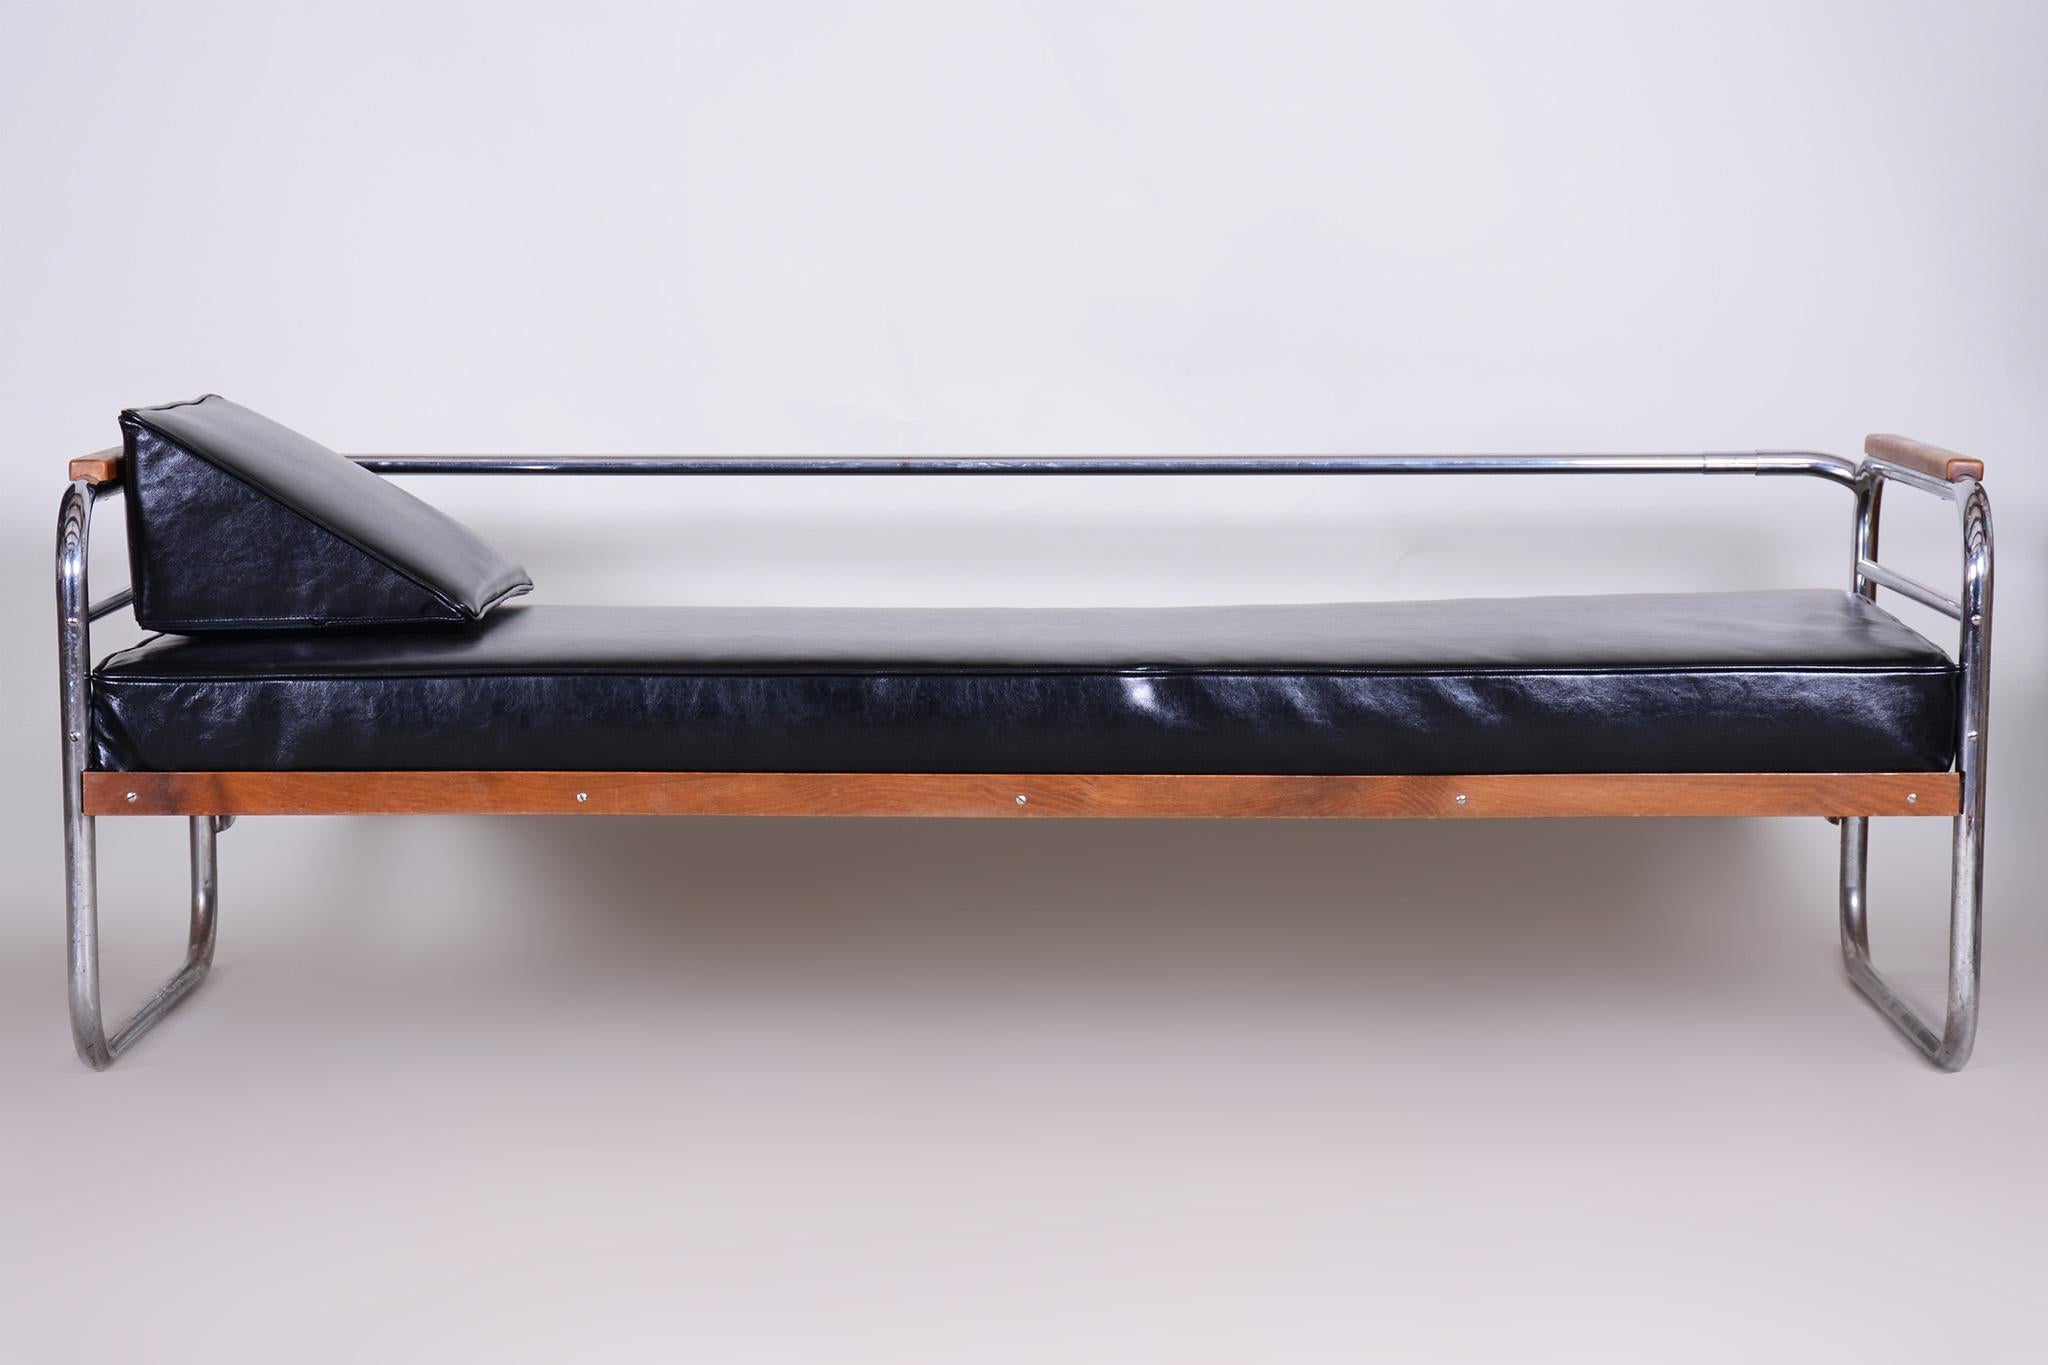 Das Sofa wurde von unserem professionellen Aufarbeitungsteam in Tschechien komplett restauriert, mit neuem, hochwertigem Leder, vollständig poliertem Chrom und aufgefrischtem Buchenholz. 

Er wurde in den 1930er Jahren in Tschechien vom